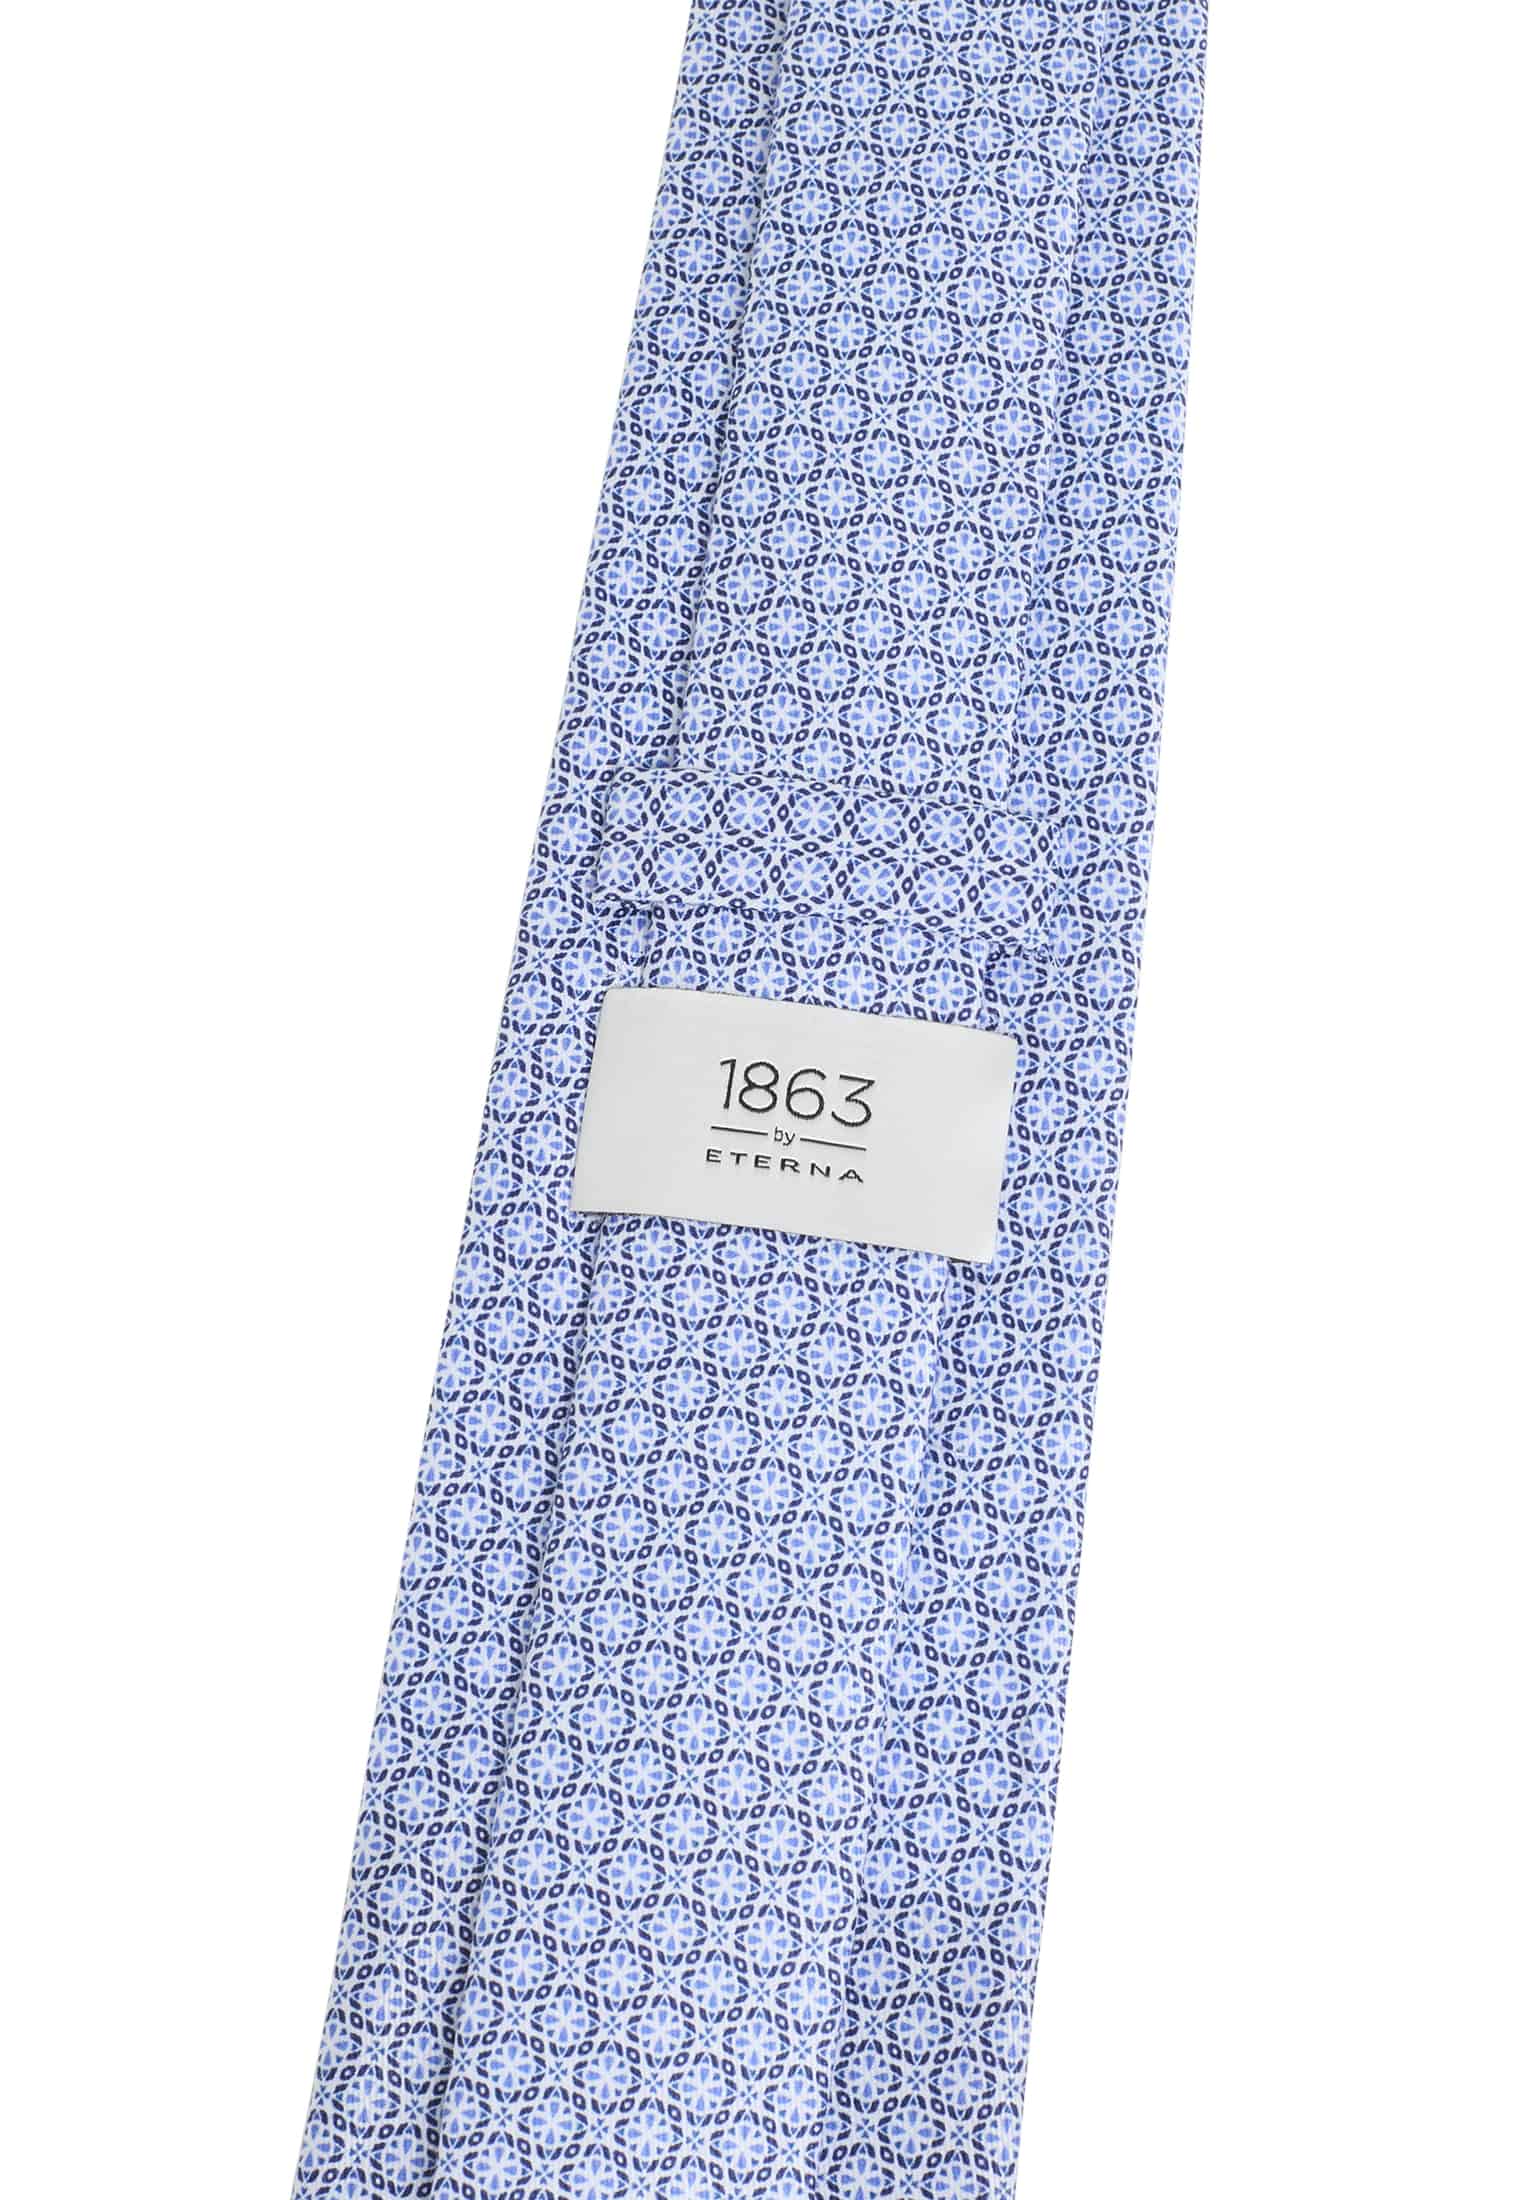 Cravate bleu imprimé